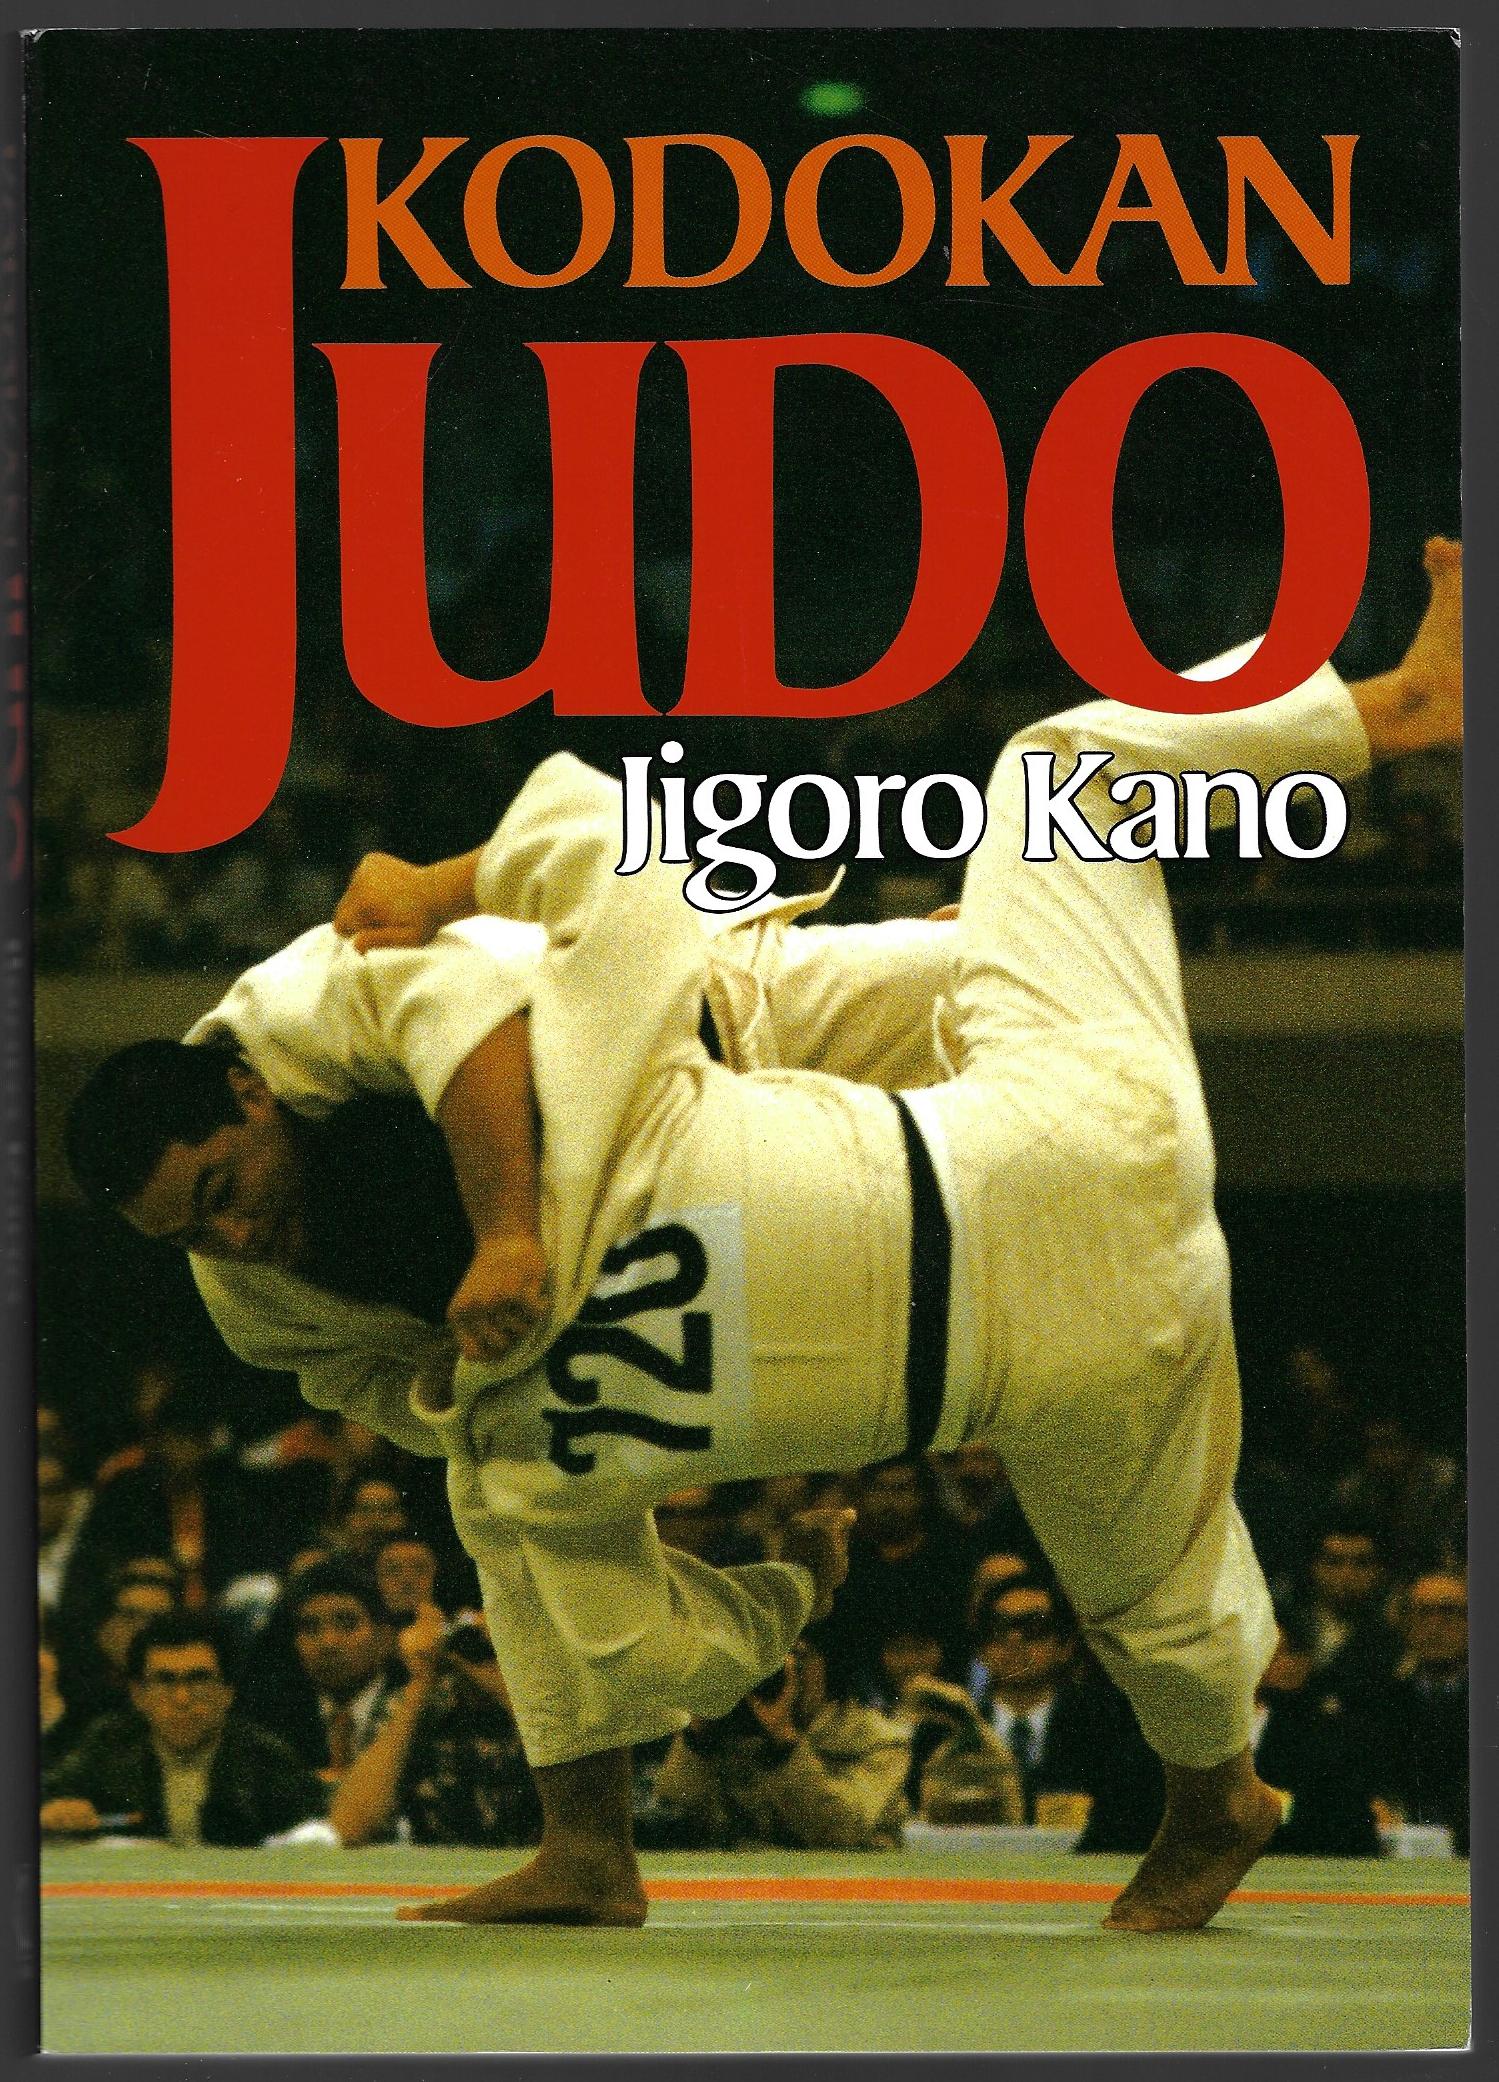 Kano, Jigoro - Kodokan Judo